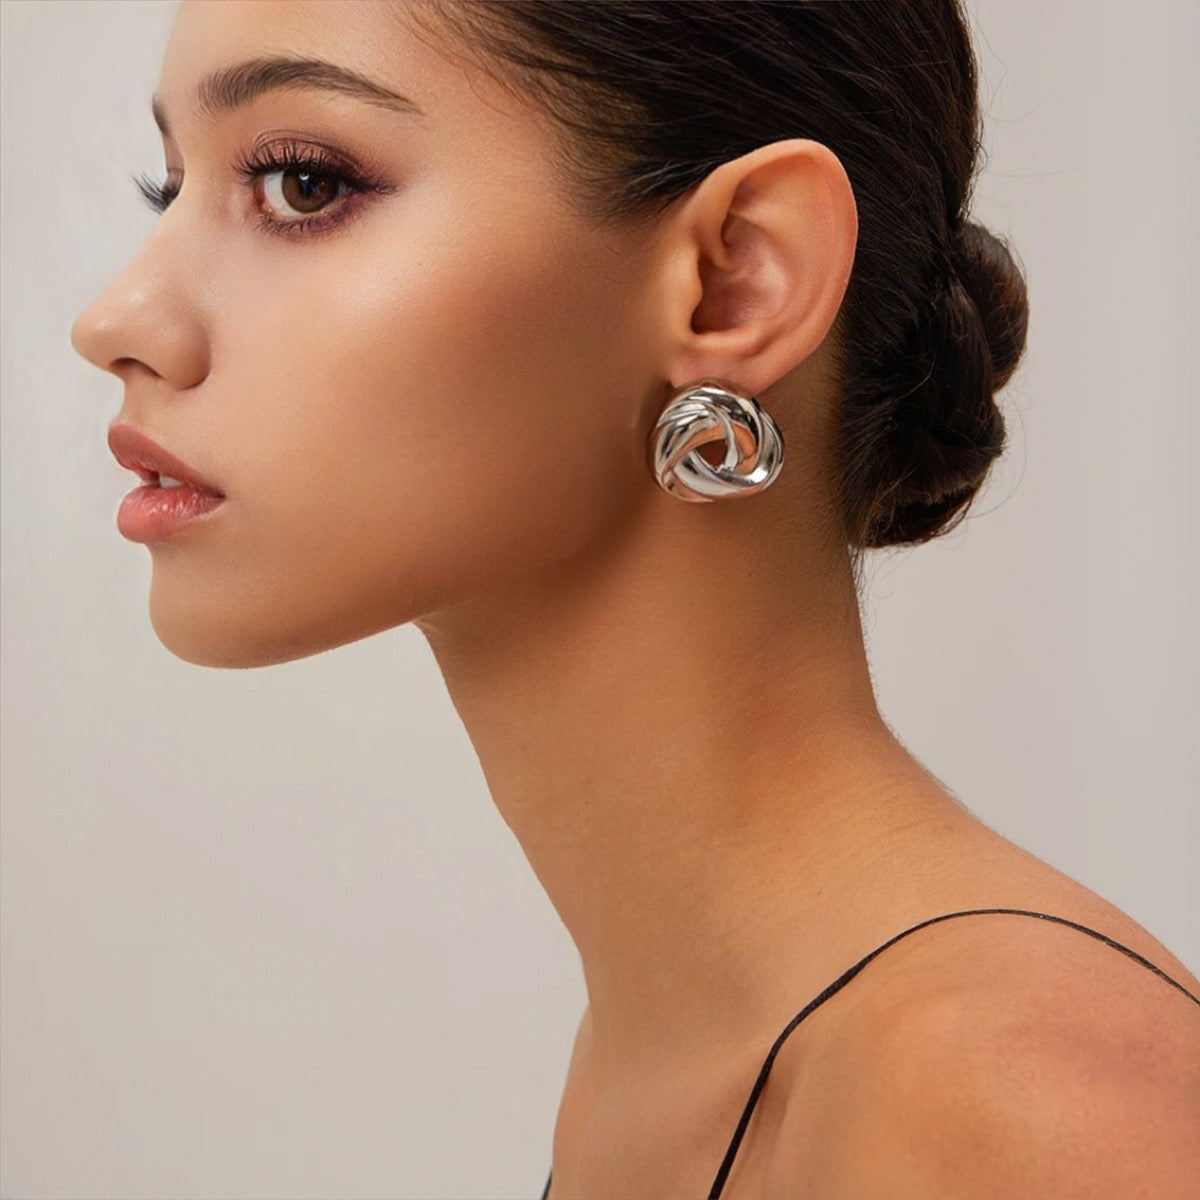 WIND earrings